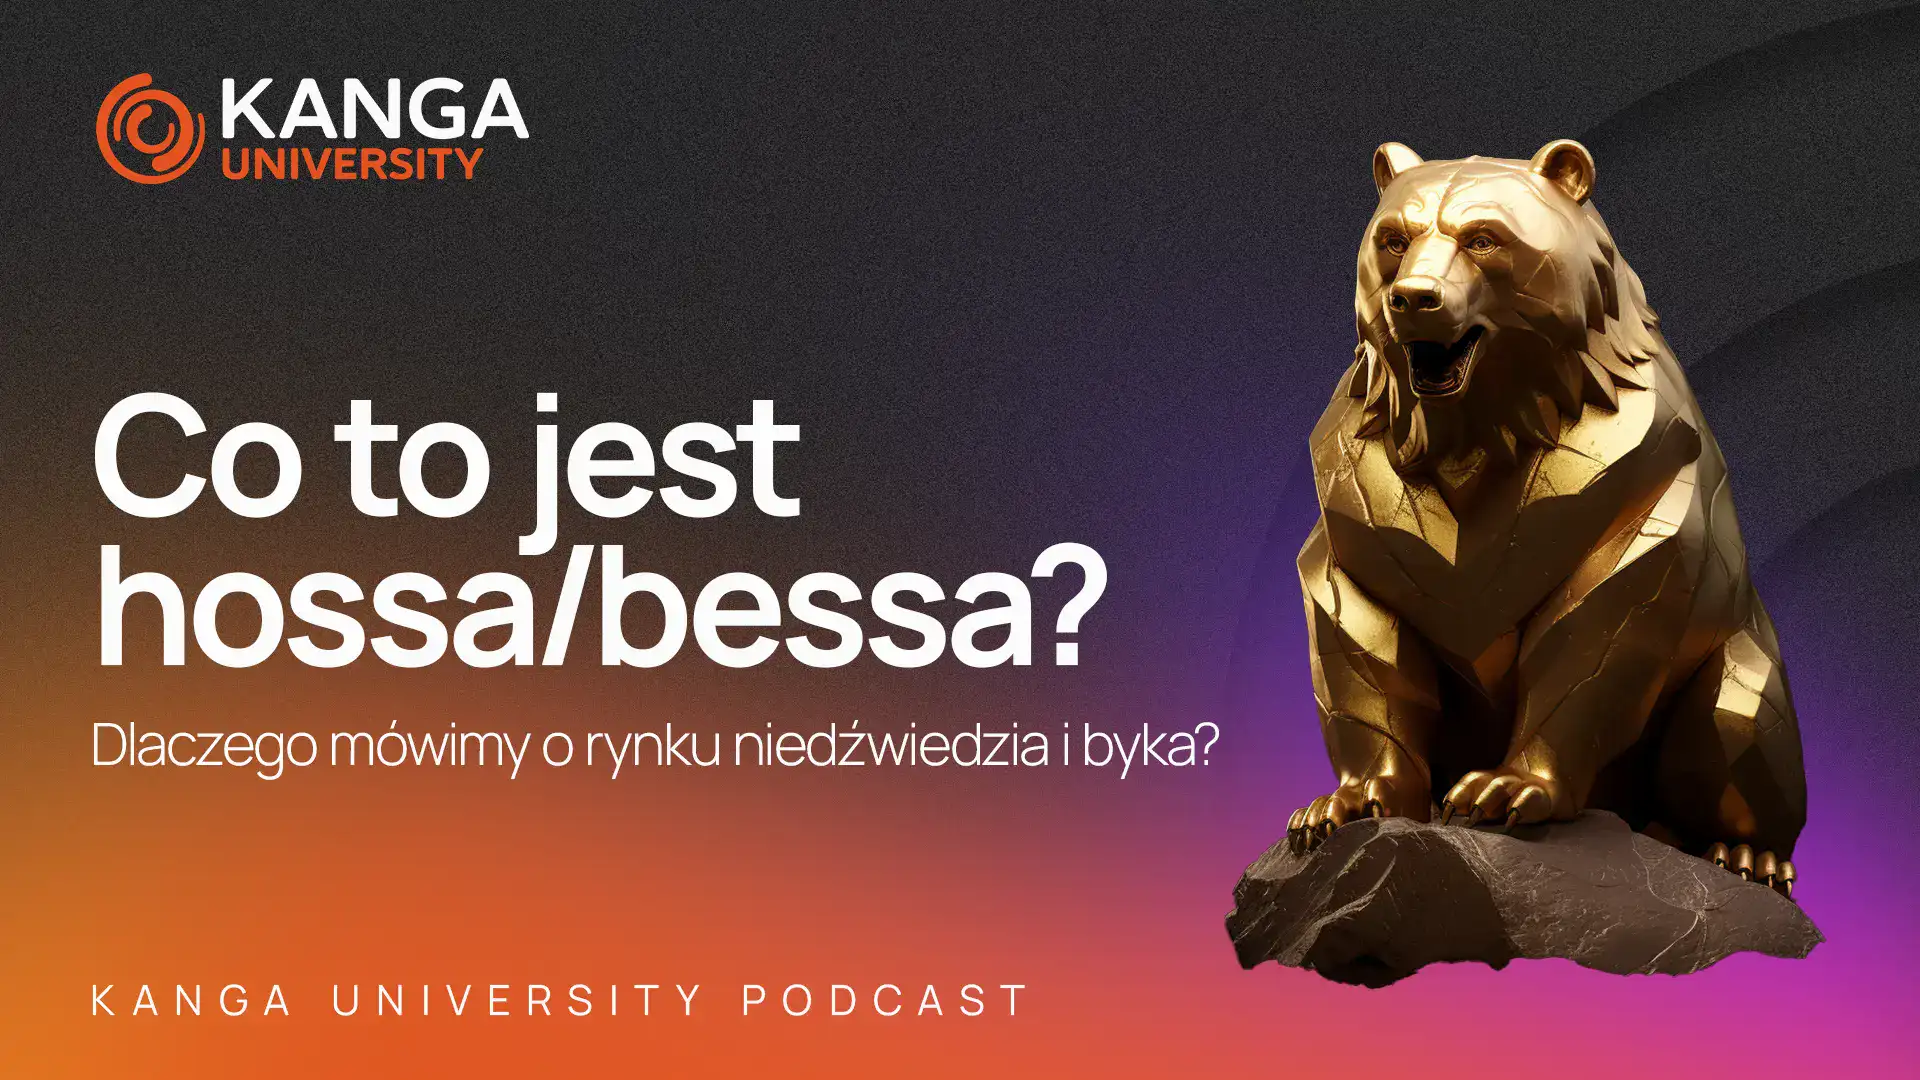 Kanga University Podcast #14 | Co to jest hossa/bessa? część II